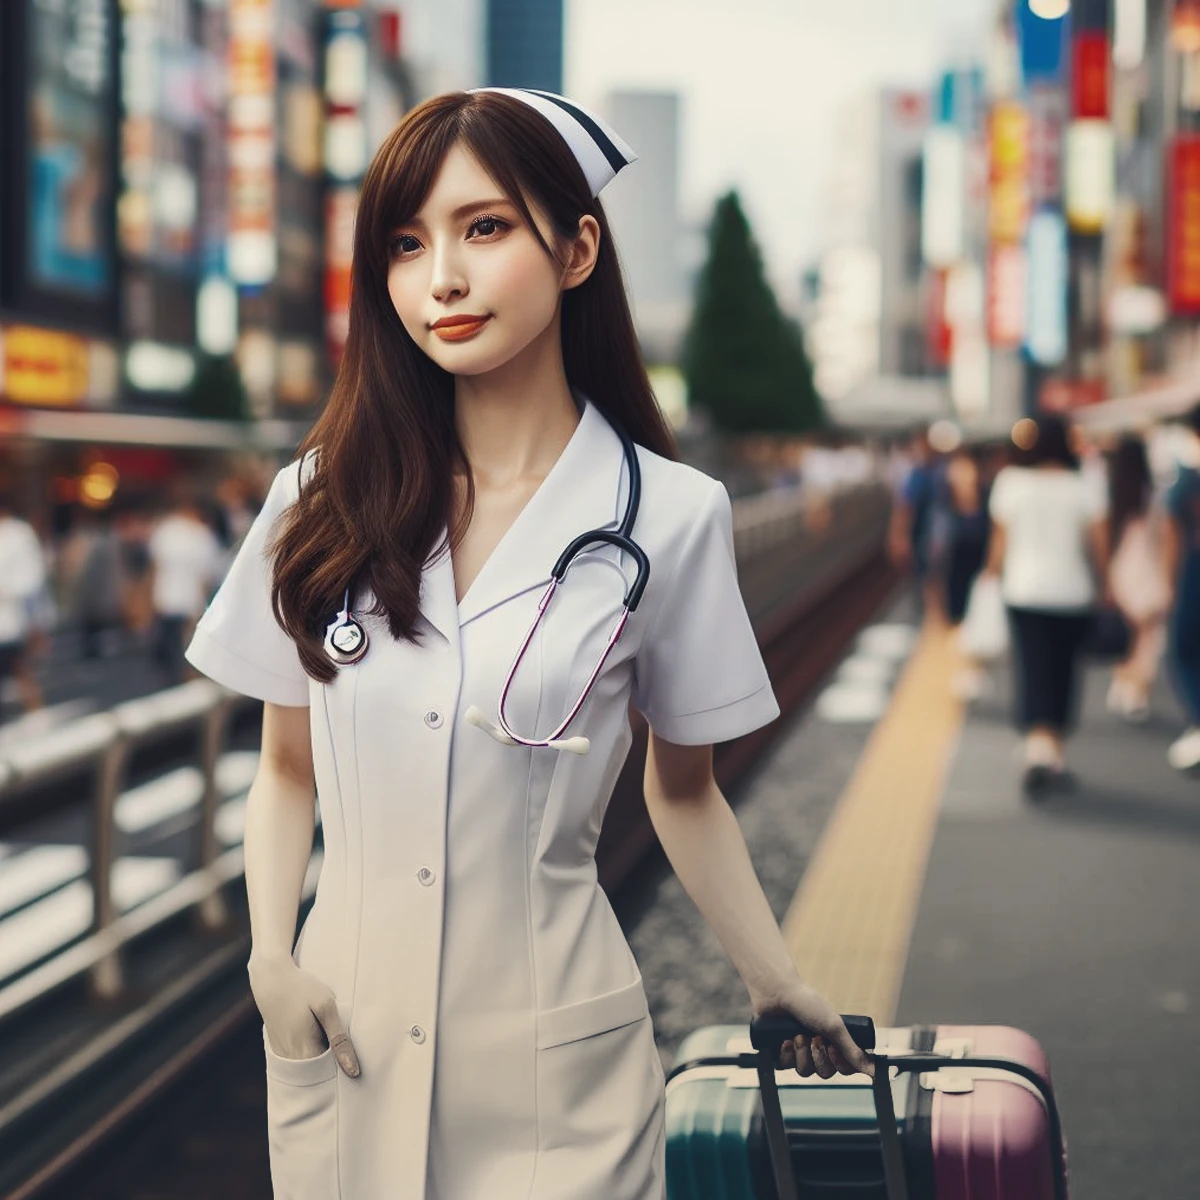 مهاجرت پرستاران به ژاپن